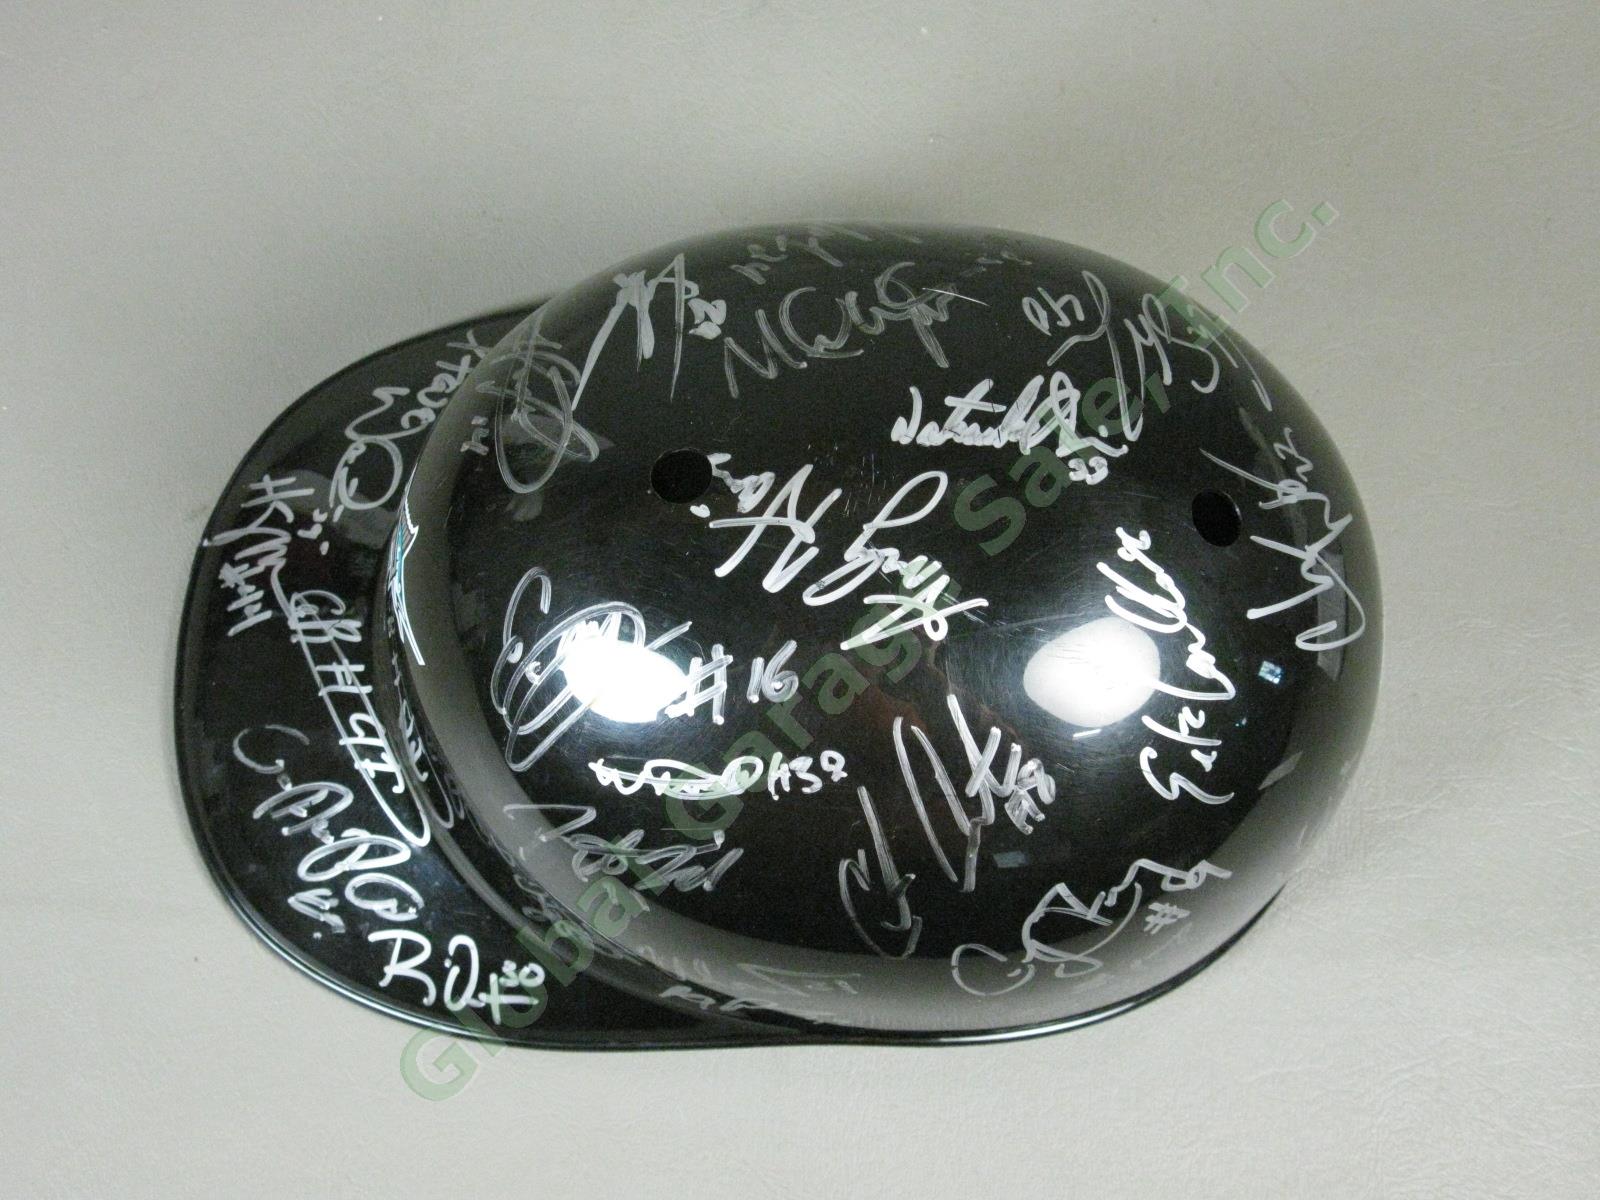 2009 Jamestown Jammers Team Signed Baseball Helmet NYPL Florida Marlins Miami NR 4